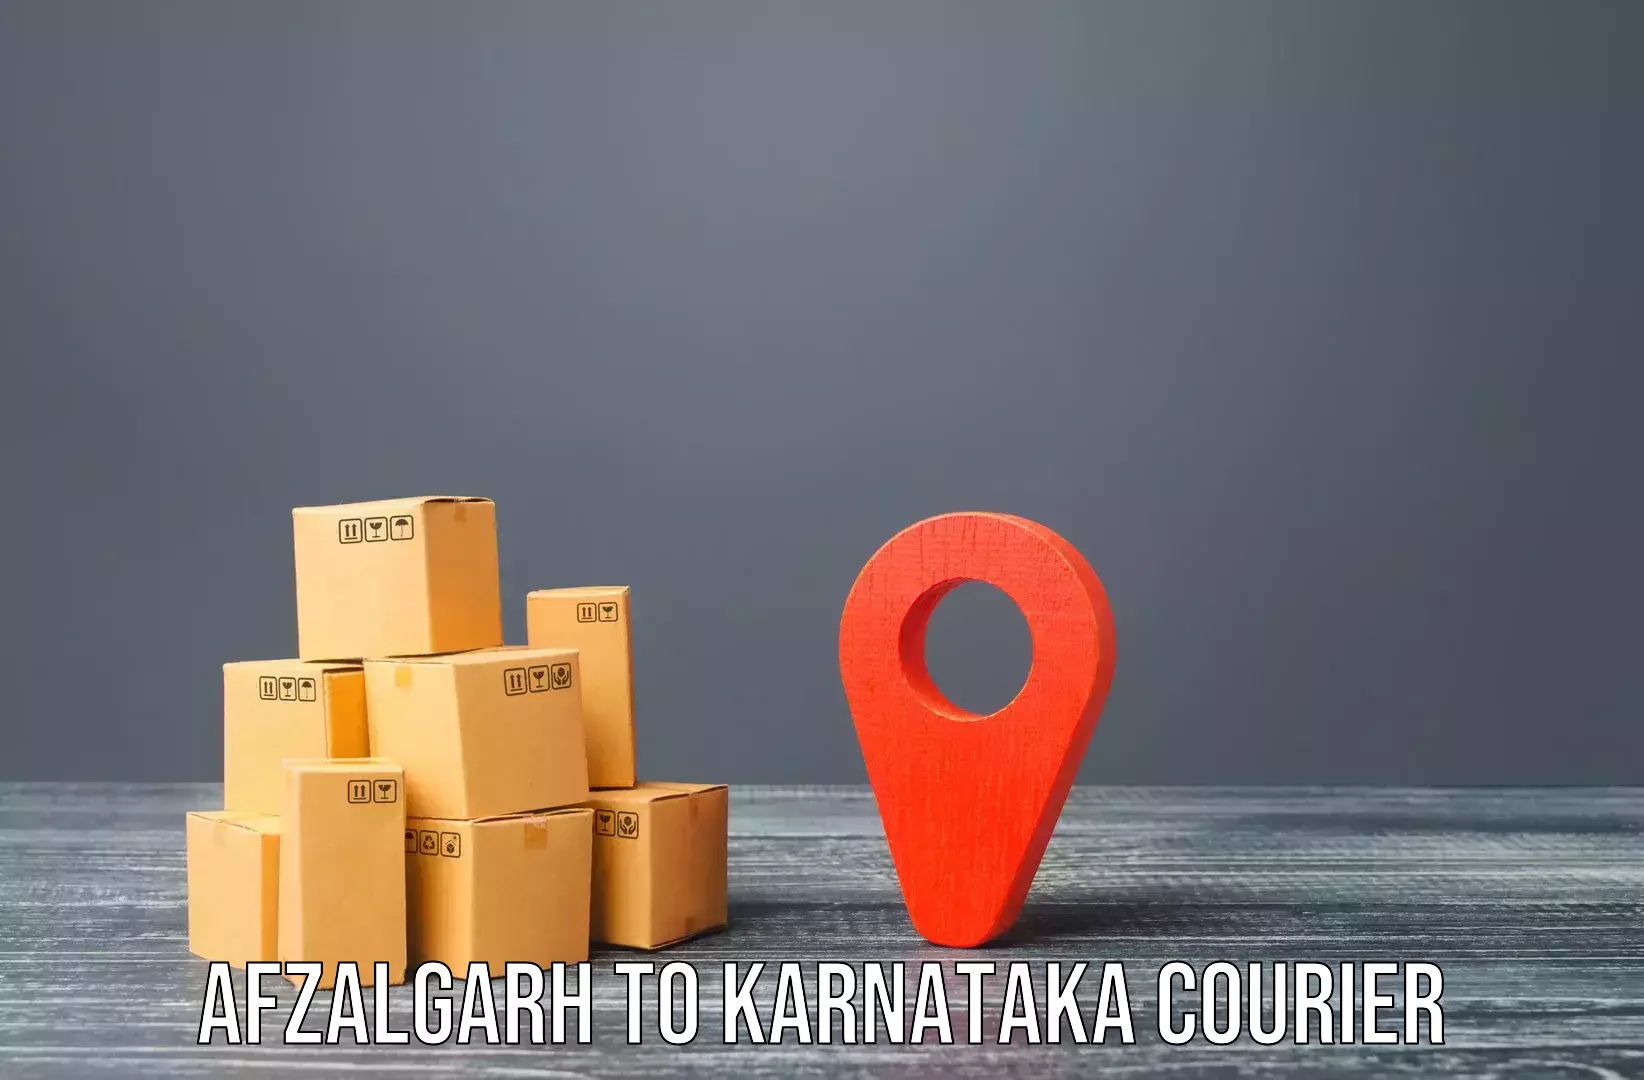 Expert goods movers Afzalgarh to Bengaluru